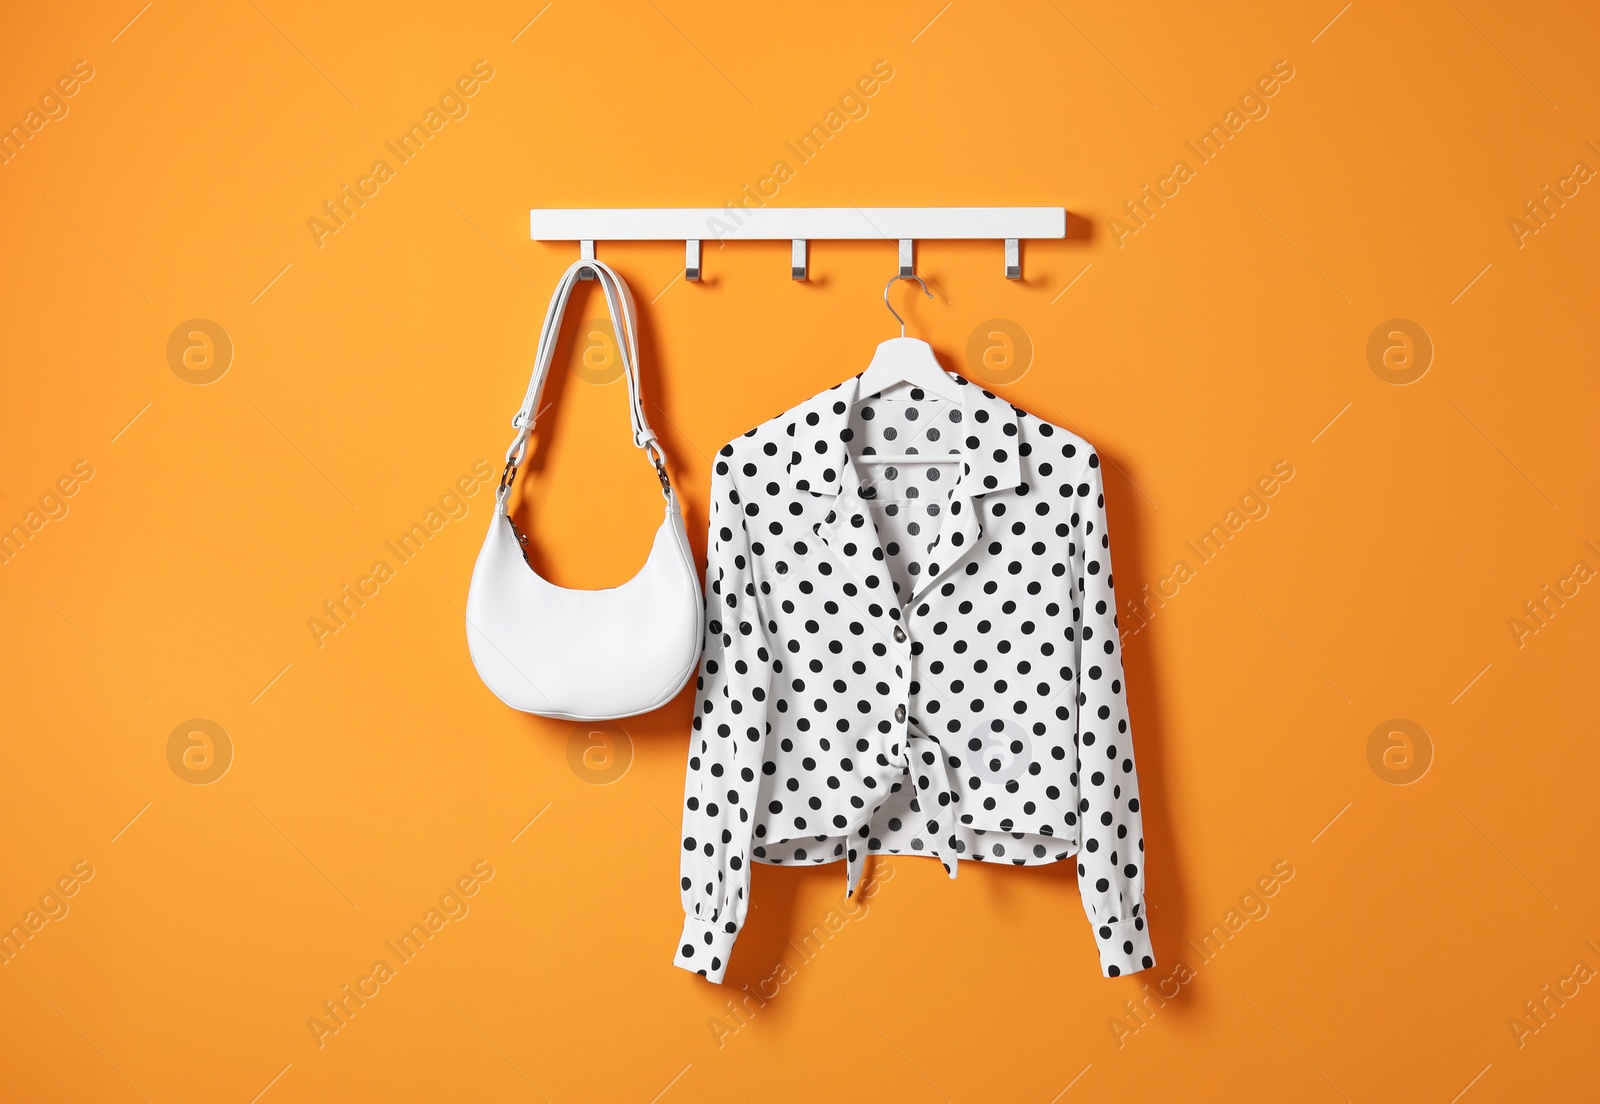 Photo of Hanger with polka dot shirt and bag on orange wall